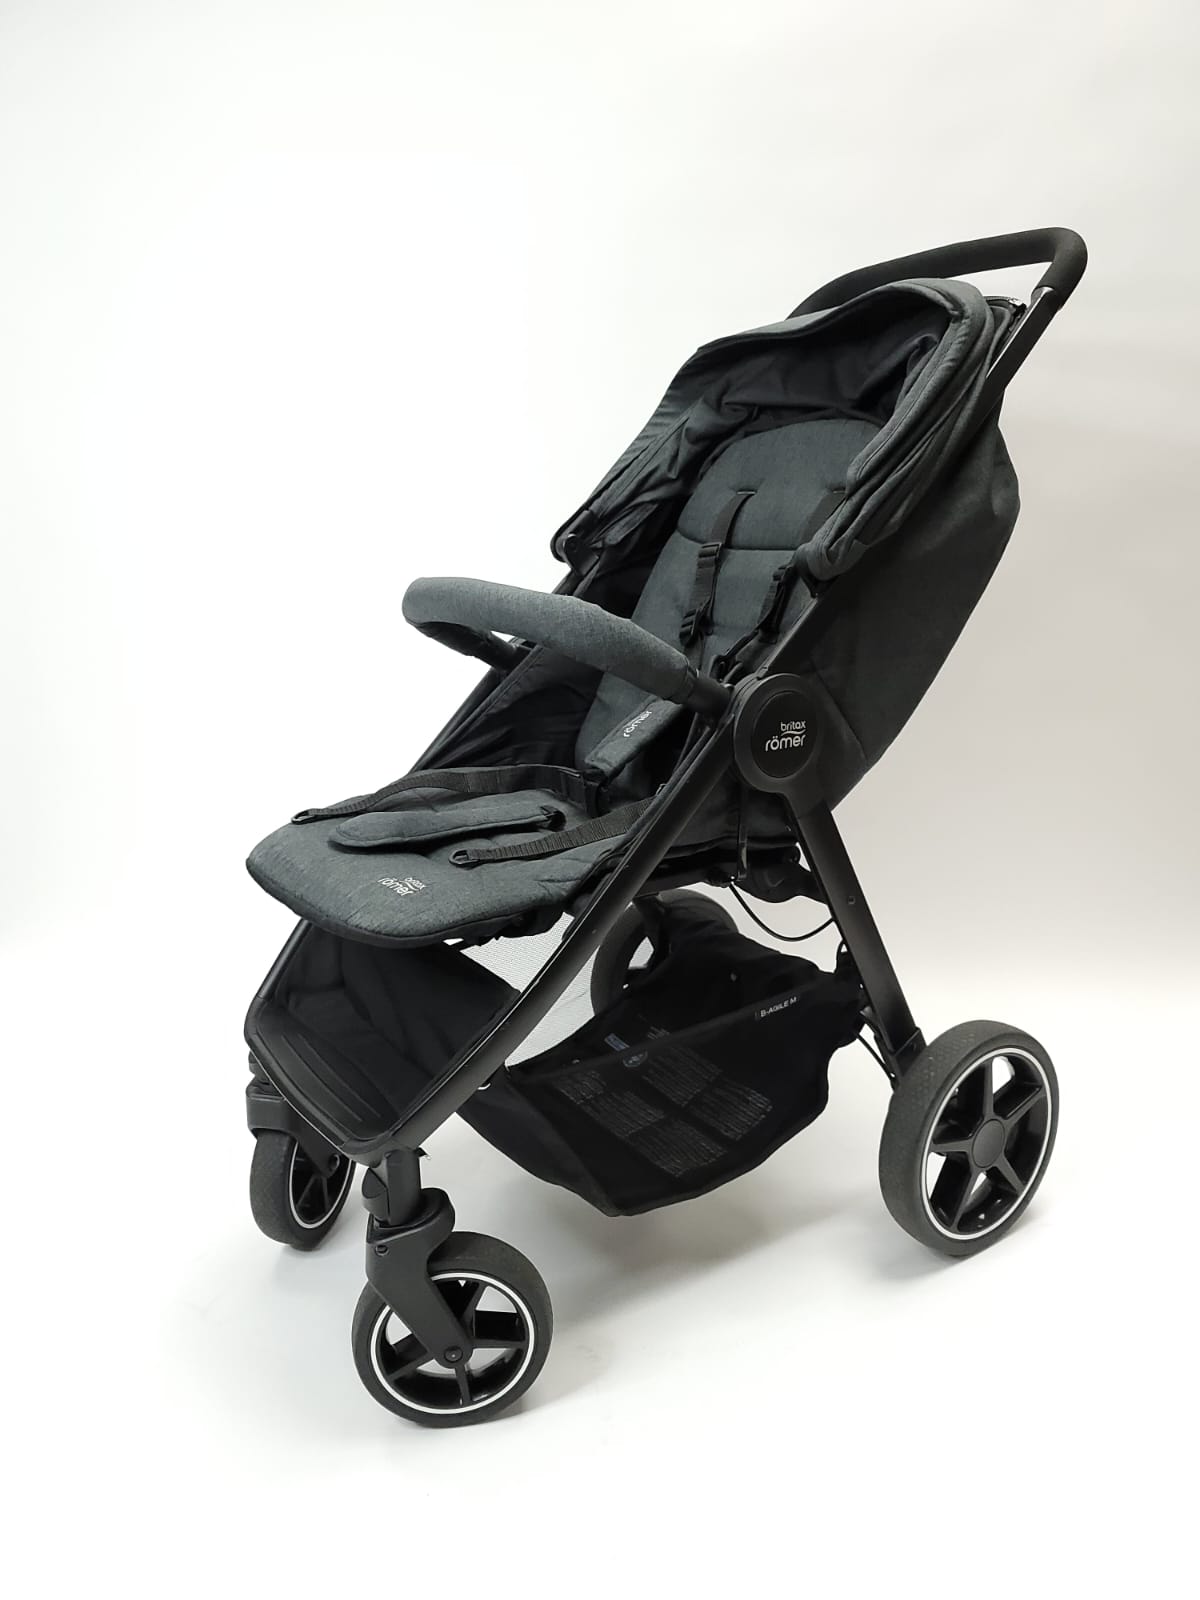 Продажа детской коляски Britax B-Agile M, цвет серый, состояние: хорошее. Тест-драйв и доставка по России.